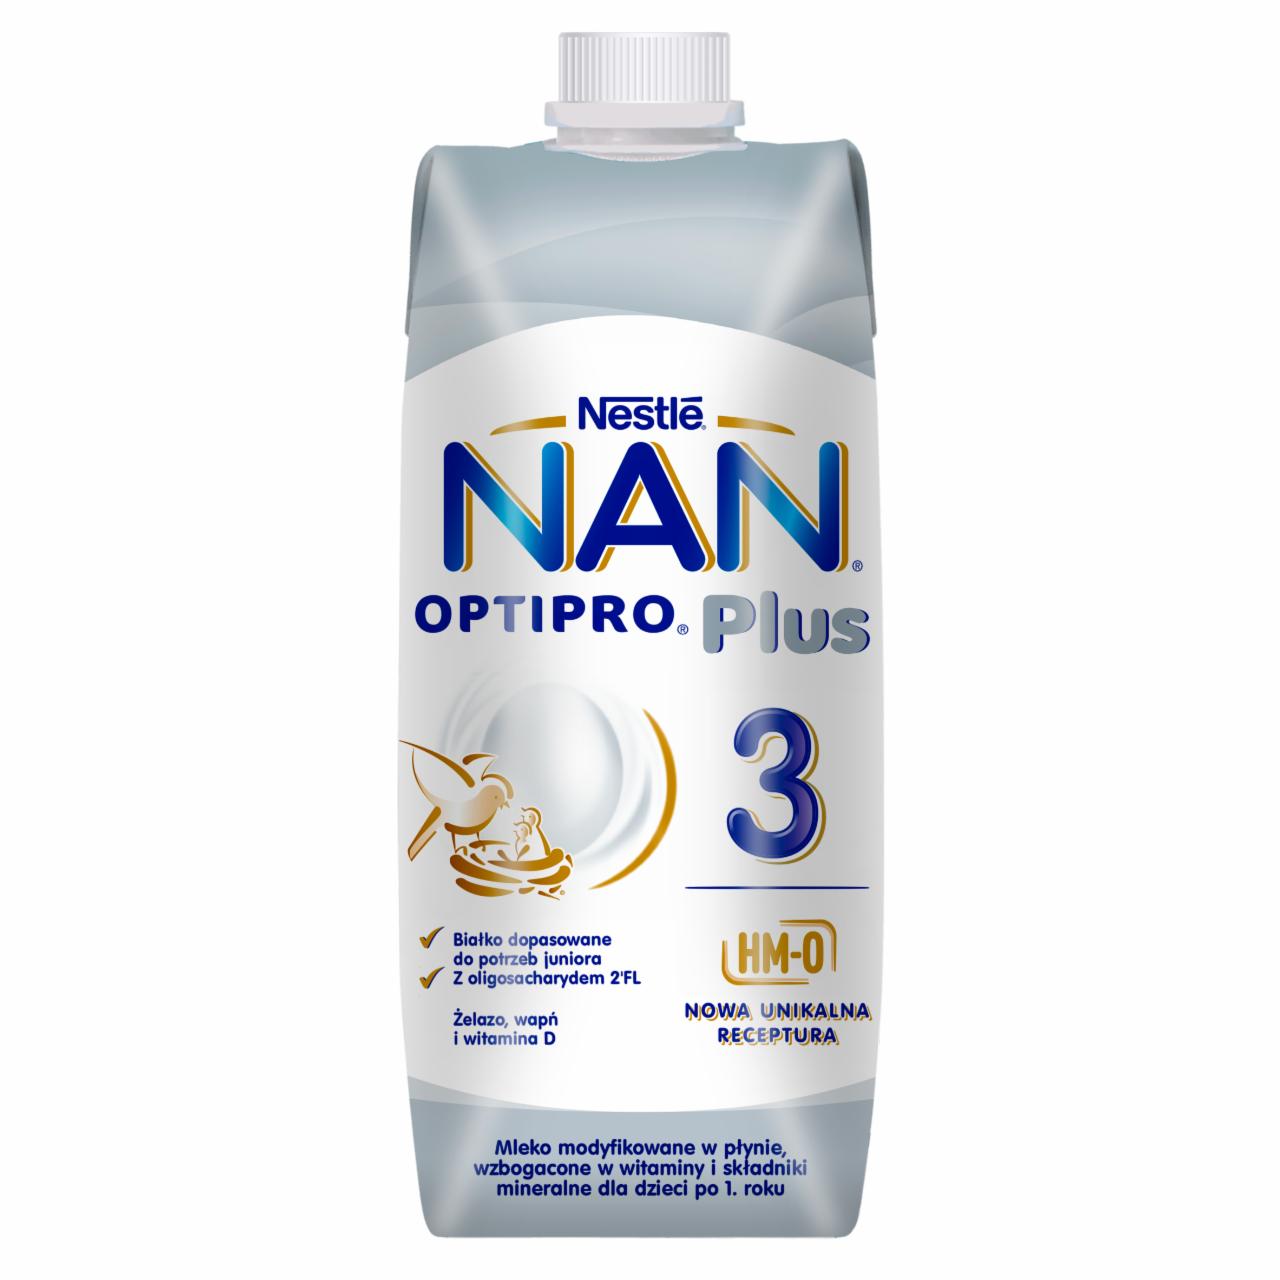 Zdjęcia - NAN OPTIPRO Plus 3 HM-O Mleko modyfikowane w płynie dla dzieci po 1. roku 500 ml